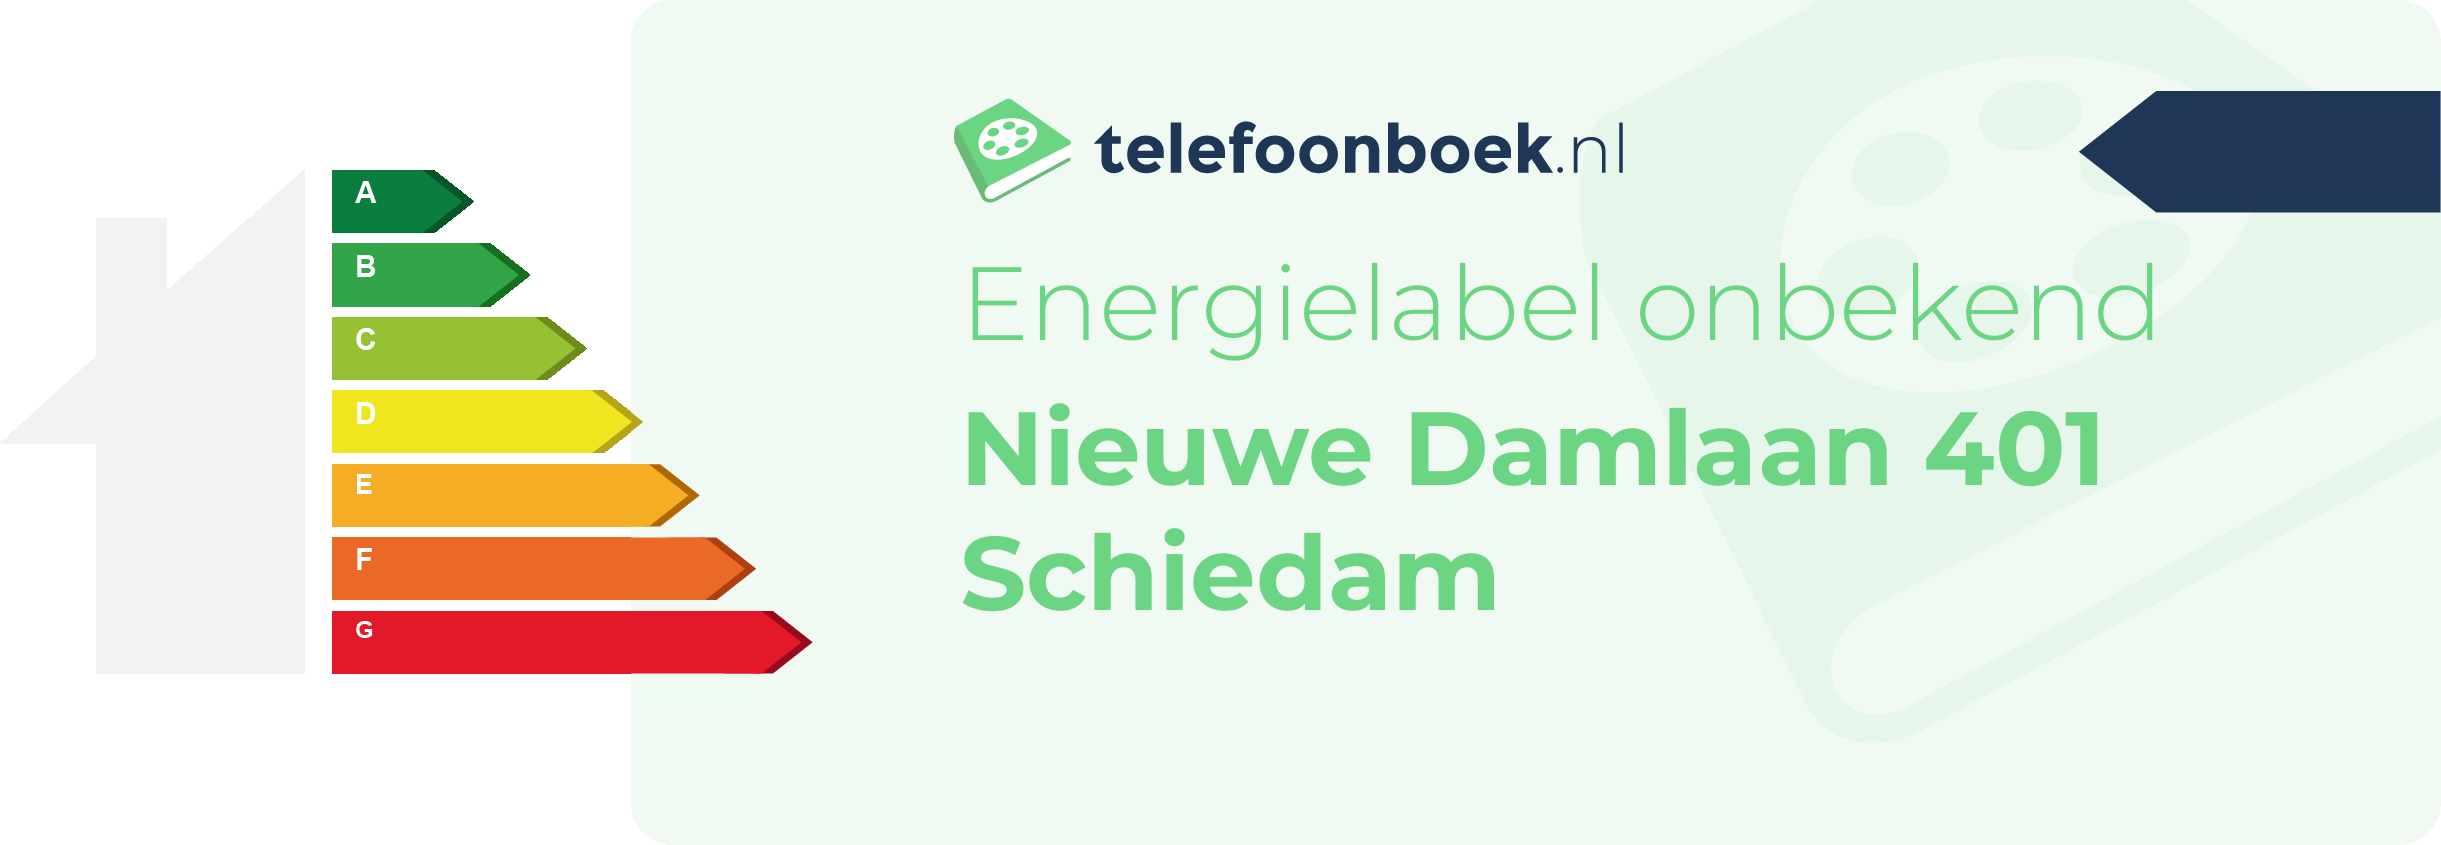 Energielabel Nieuwe Damlaan 401 Schiedam